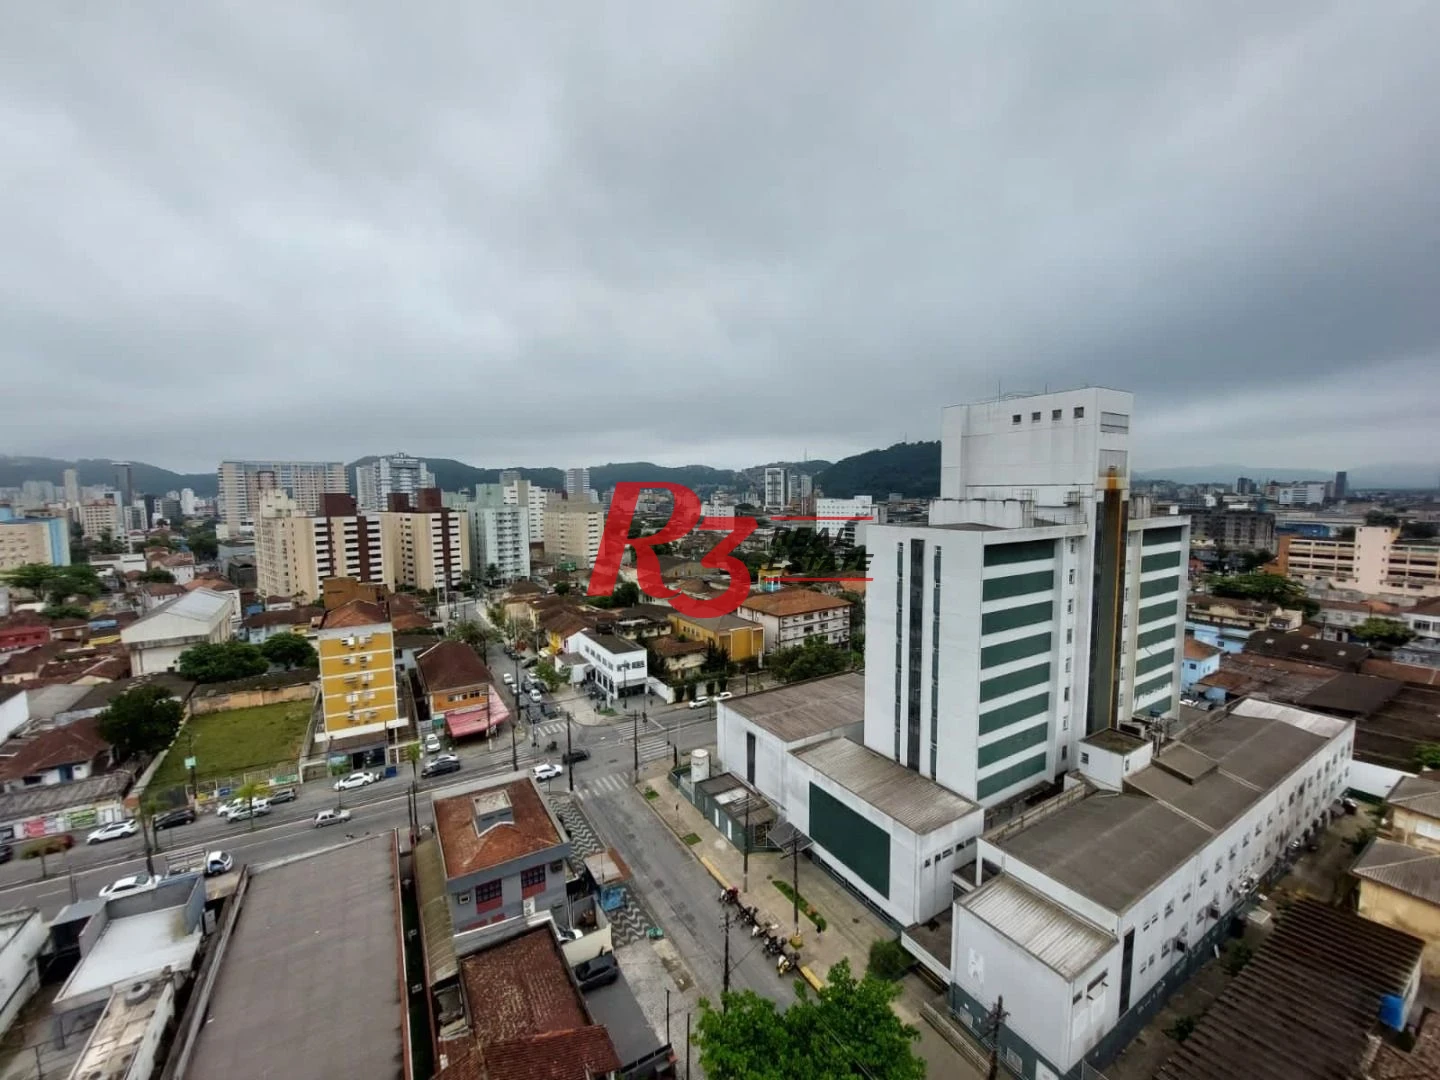 Apartamento com 1 dormitório à venda, 42 m² por R$ 350.000,00 - Macuco - Santos/SP